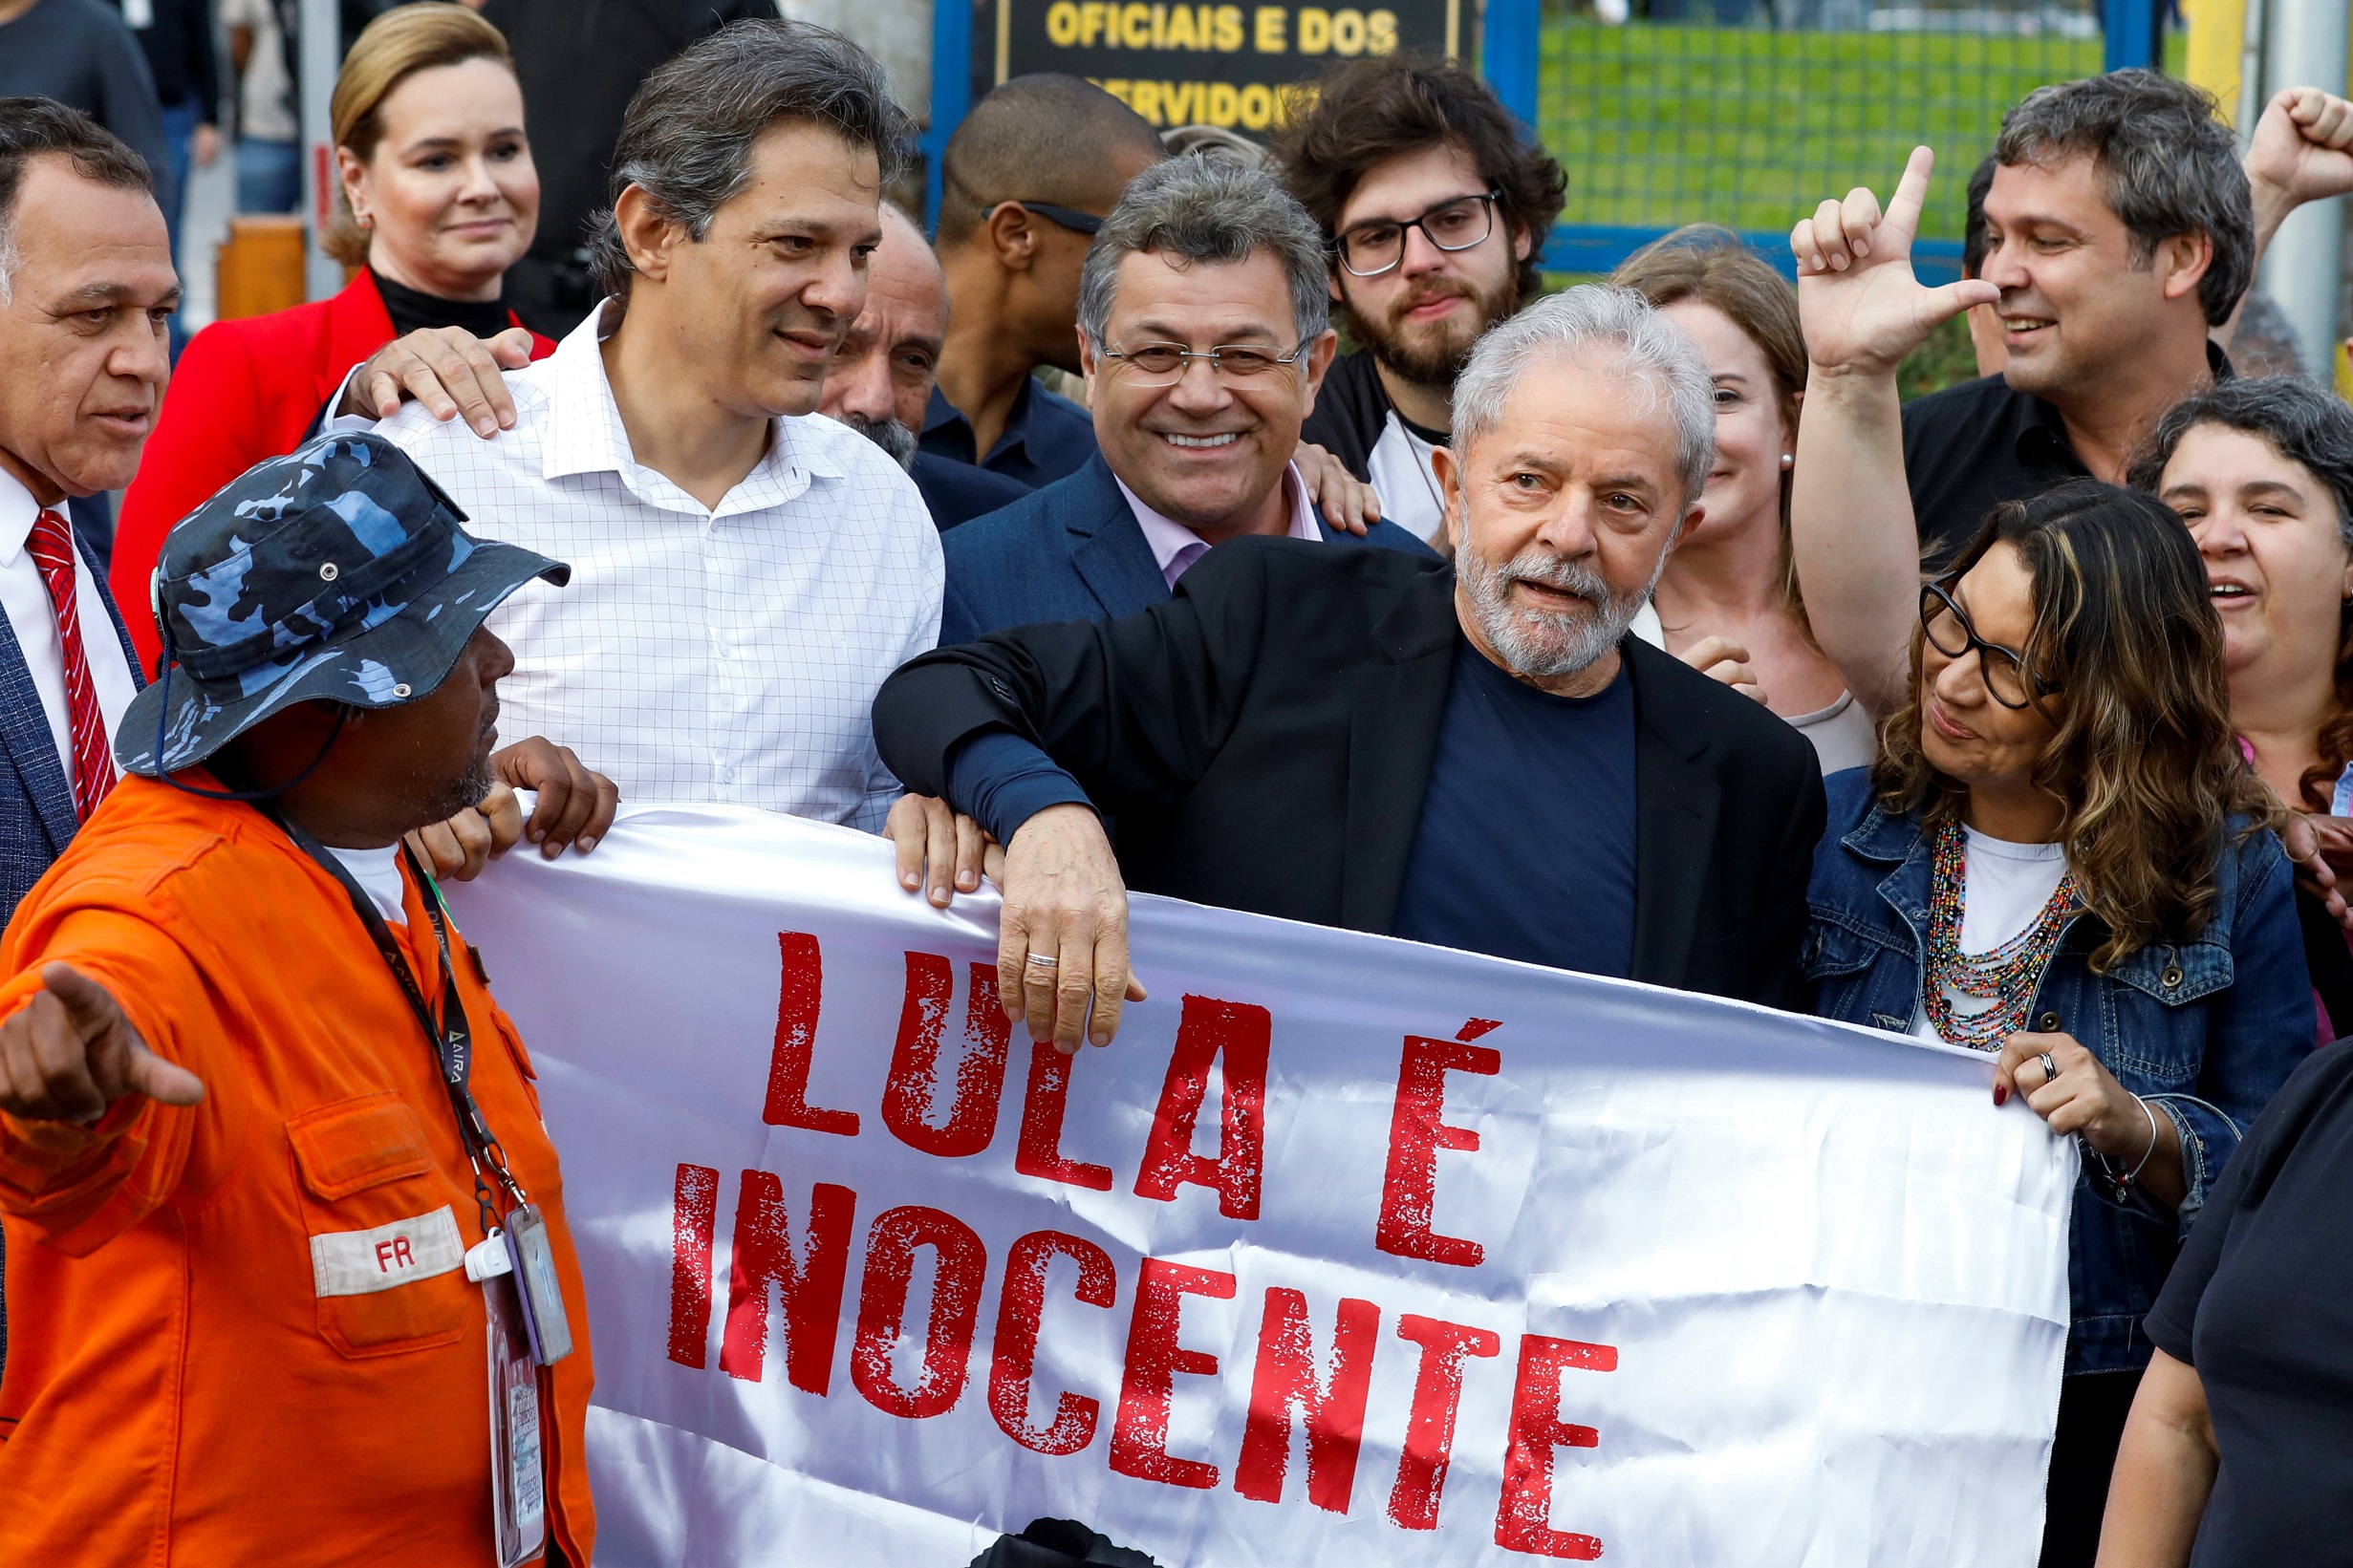 الرئيس البرازيلي اليساري السابق لويس إيناسيو لولا دا سيلفا بعد خروجه من السجن في كورتيبا. (رويترز)